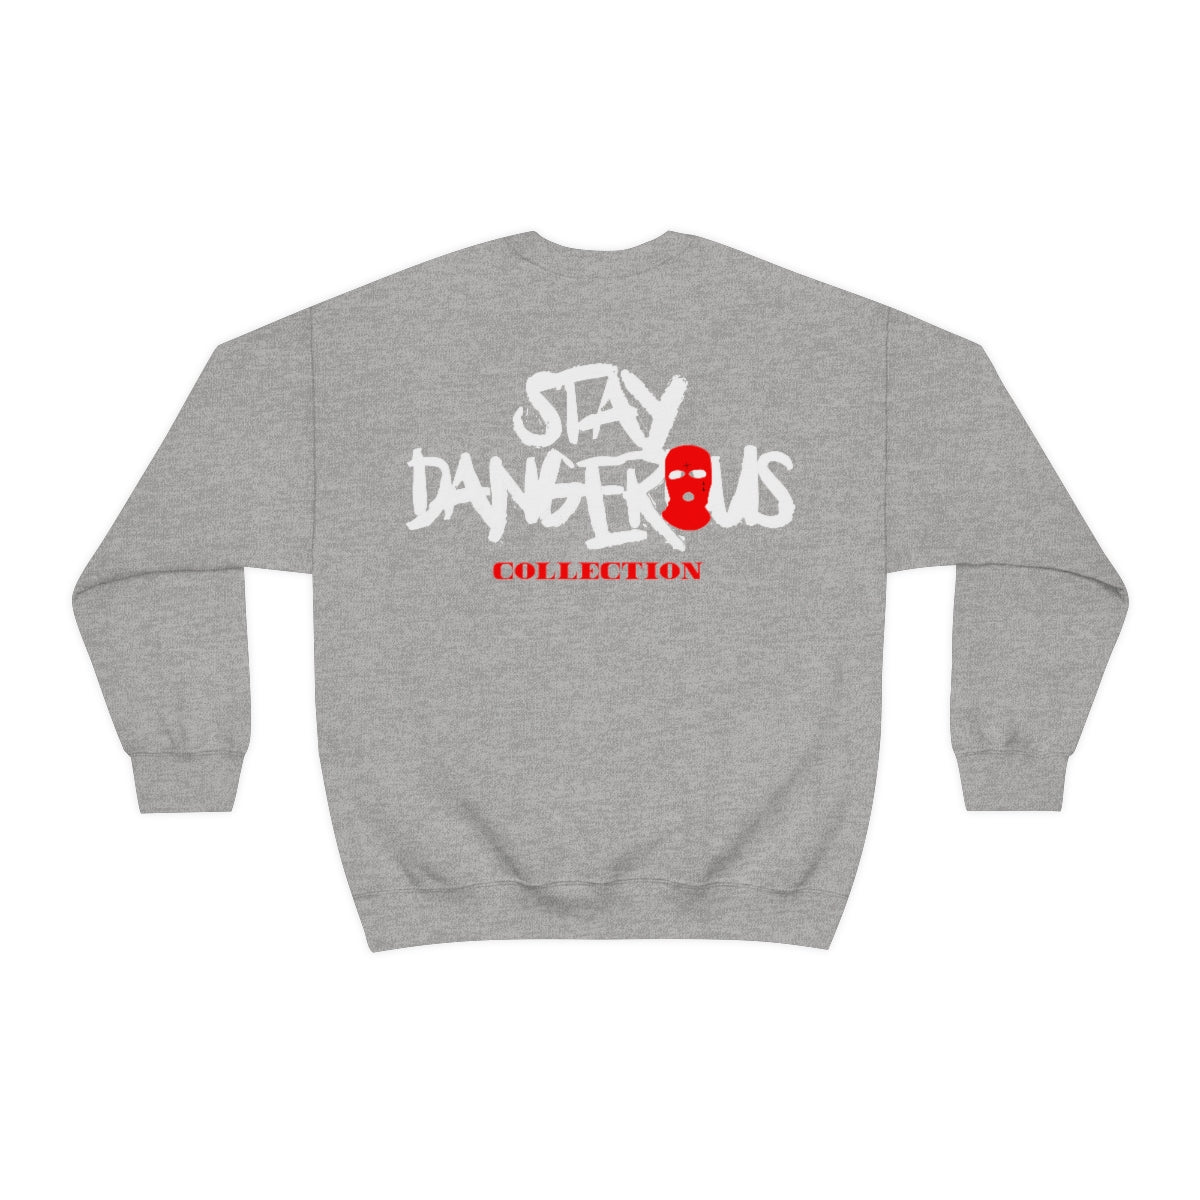 Stay Dangerous Crewneck Sweatshirt